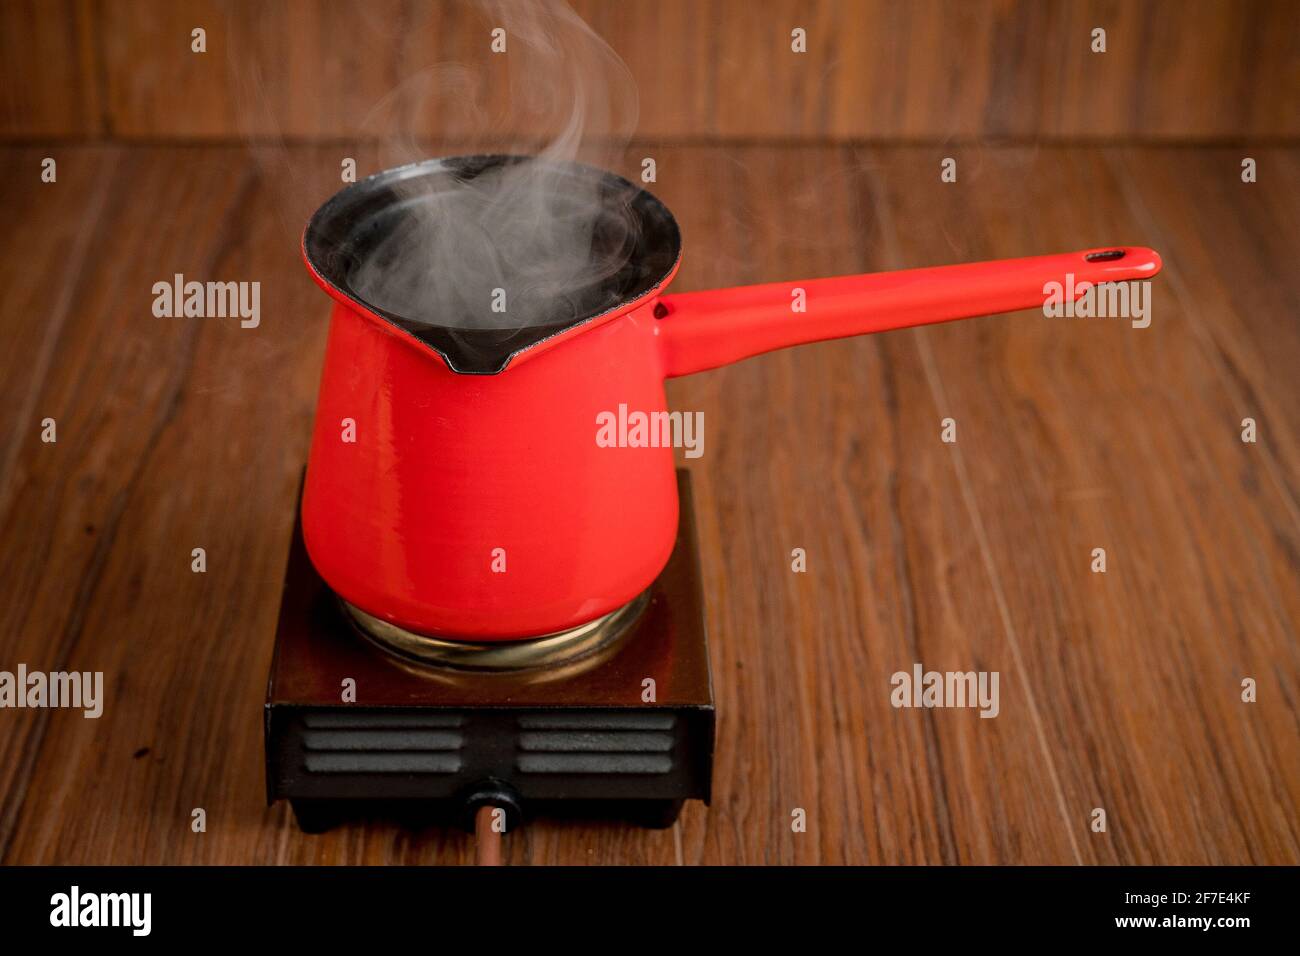 Petite cuisinière électrique mobile à plaque simple avec une cafetière rouge. De la vapeur ou de la fumée s'échappe de la cuve pendant la préparation du café ou d'une autre boisson chaude Banque D'Images